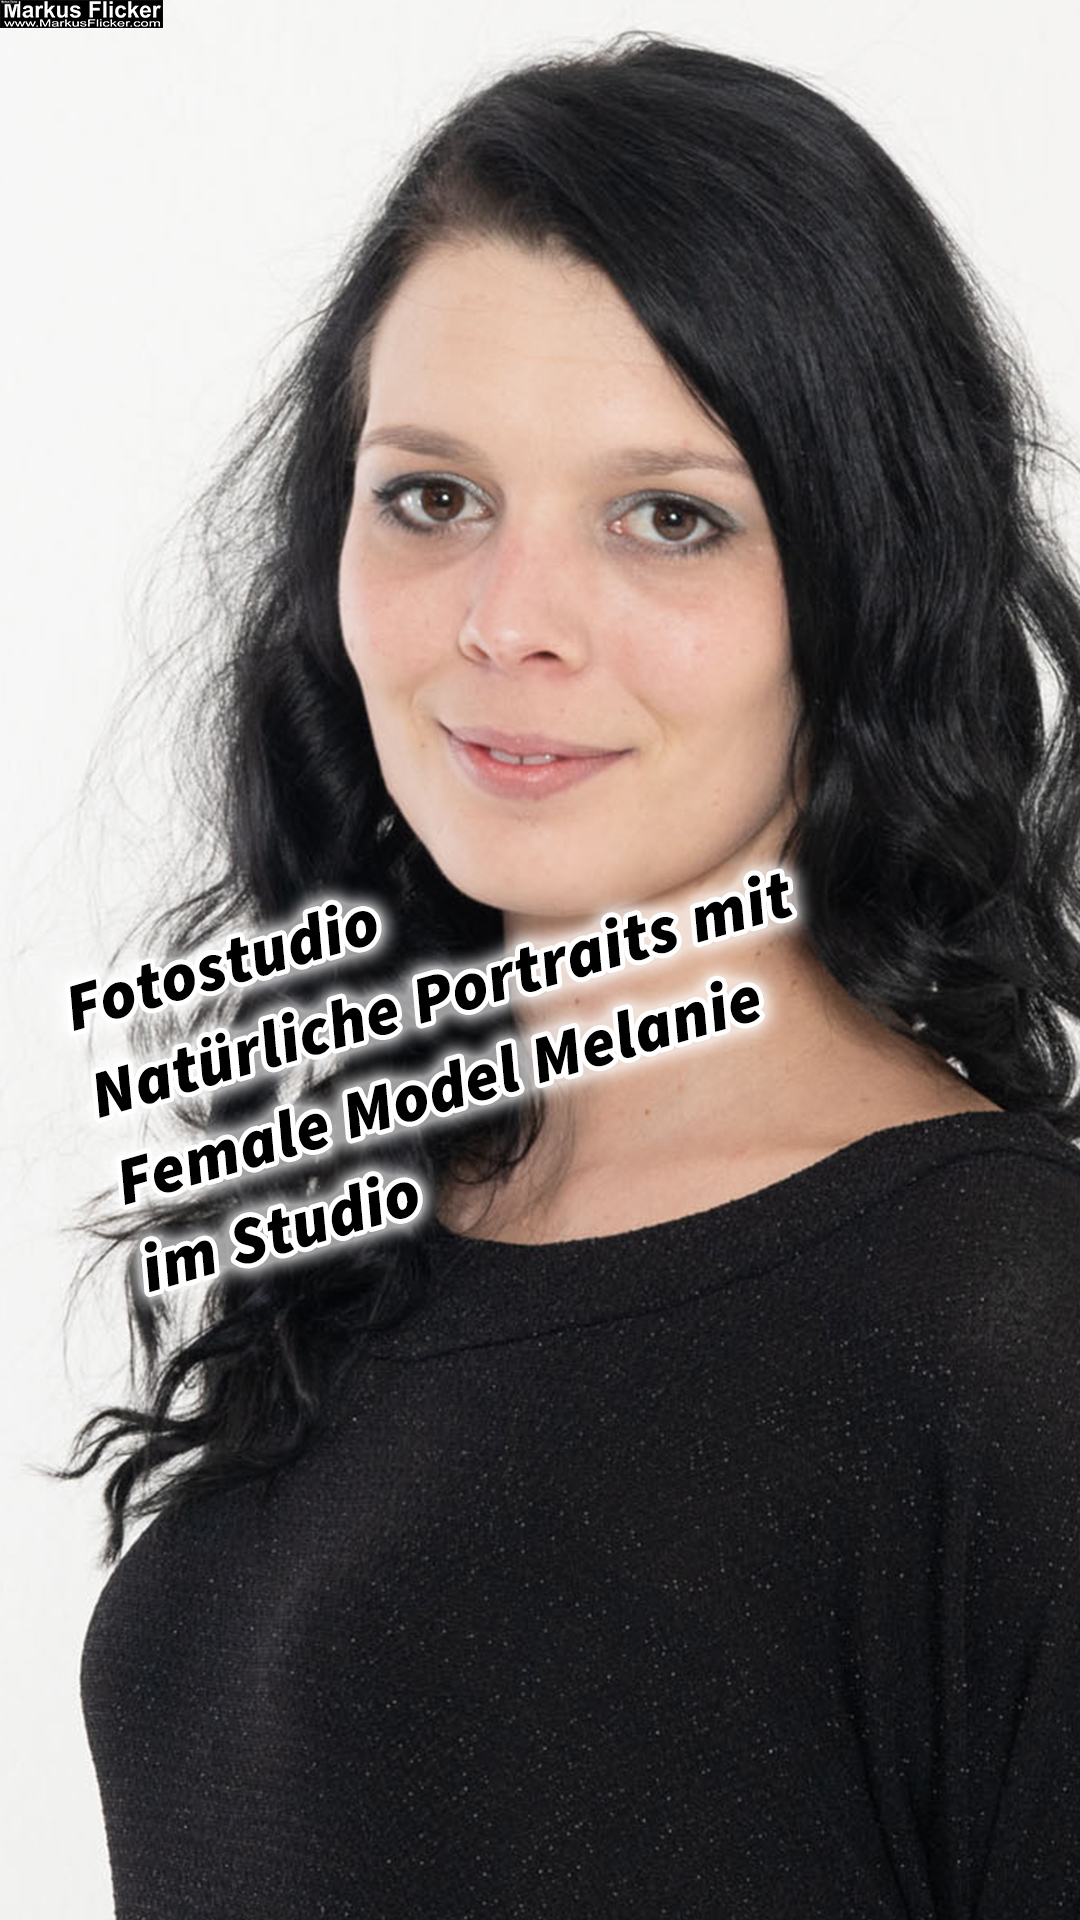 Fotostudio Natürliche Portraits mit Female Model Melanie im Studio spontan und gemütlich